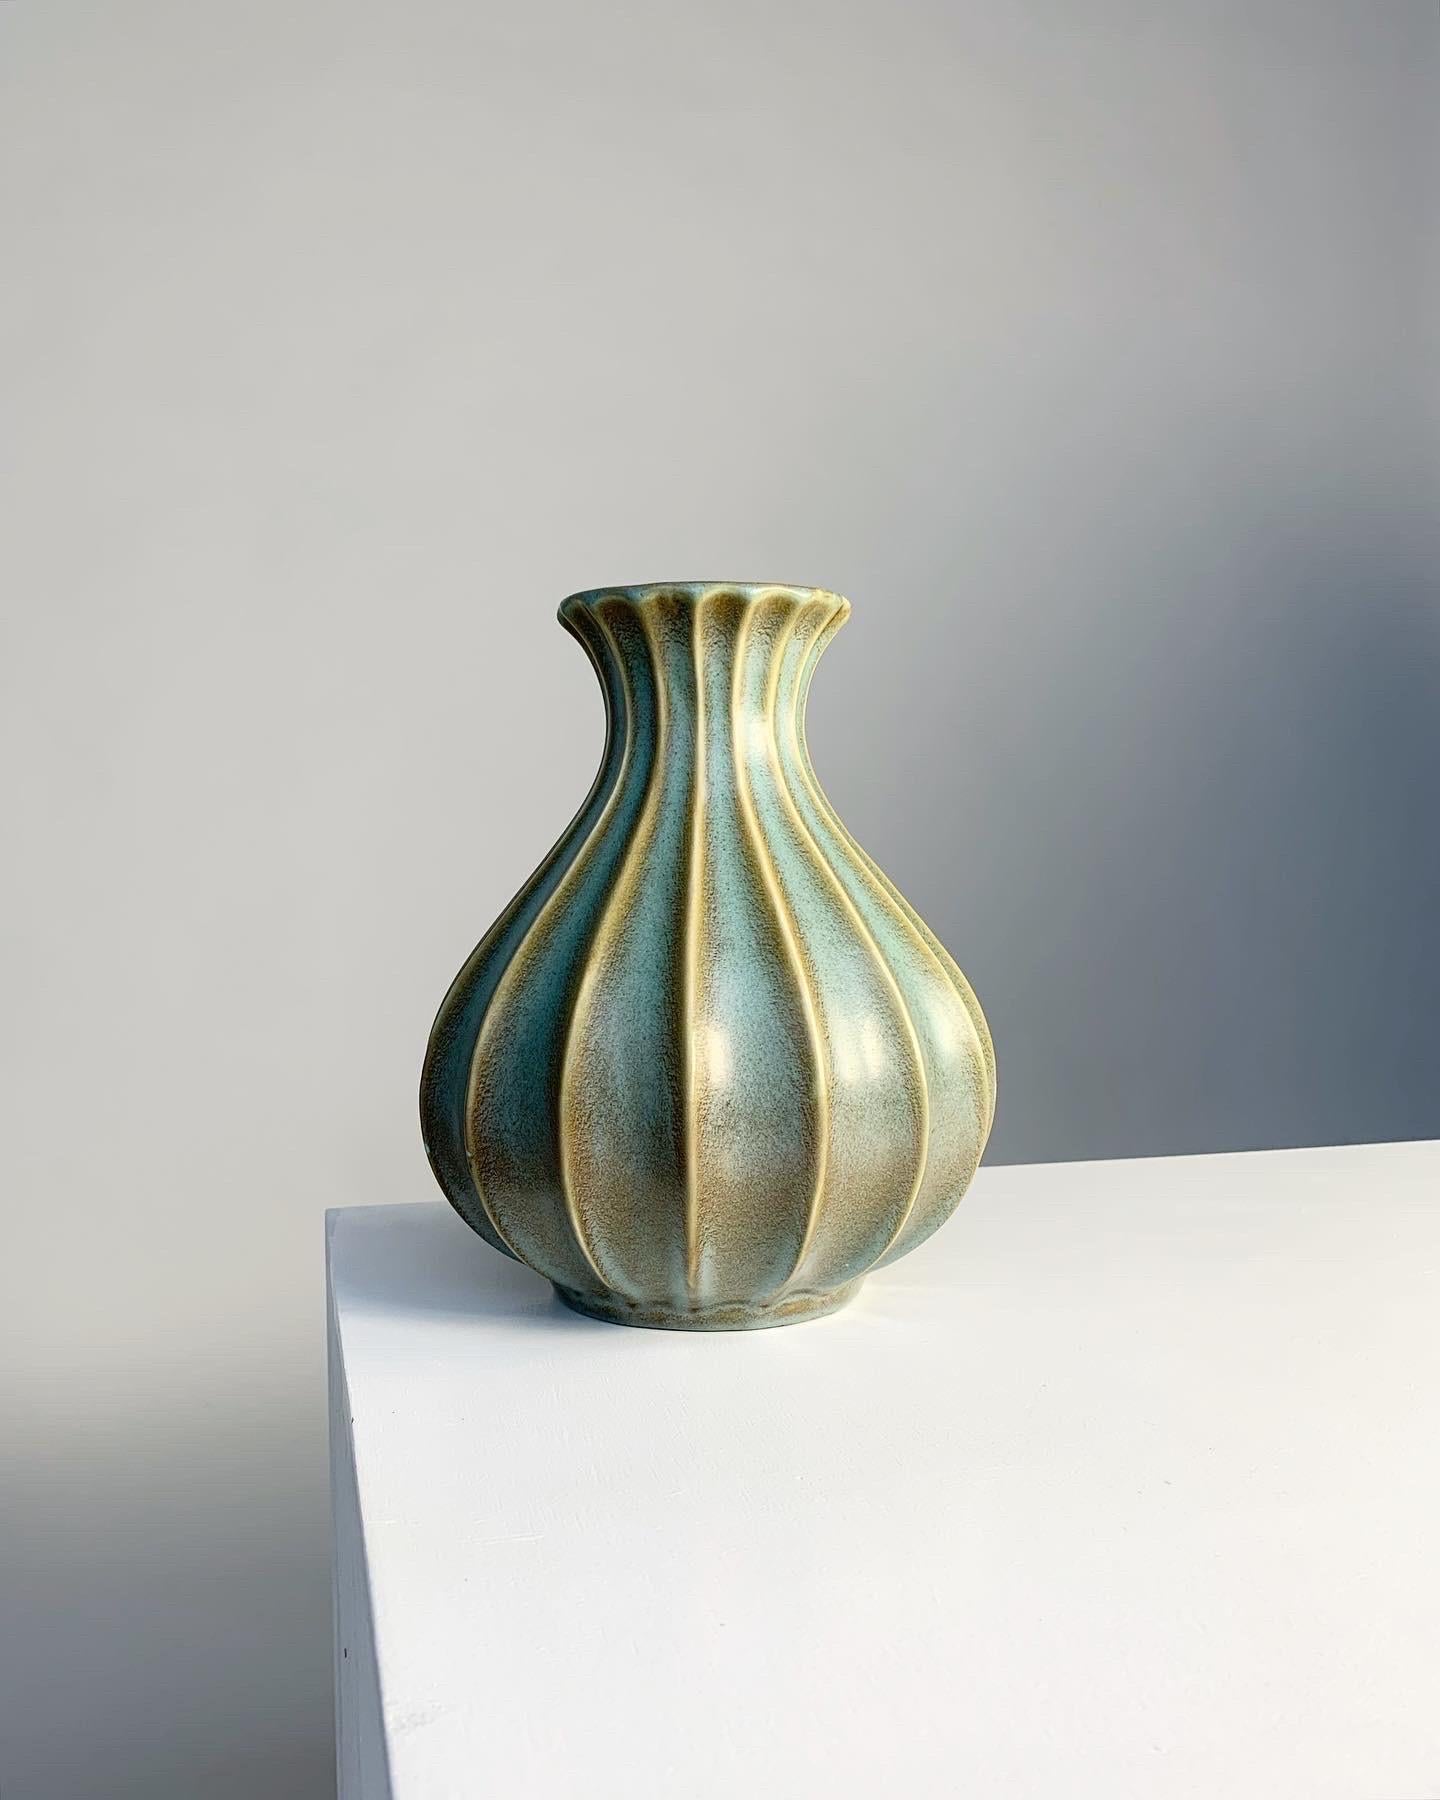 Seltene Vase aus Steinzeug von Ewald Dahlskog für Bo Fajans (Bobergs Fajansfabrik), handgefertigt Mitte der 1930er bis Anfang der 1940er Jahre in Schweden.

Die Glasurfarbe heißt 